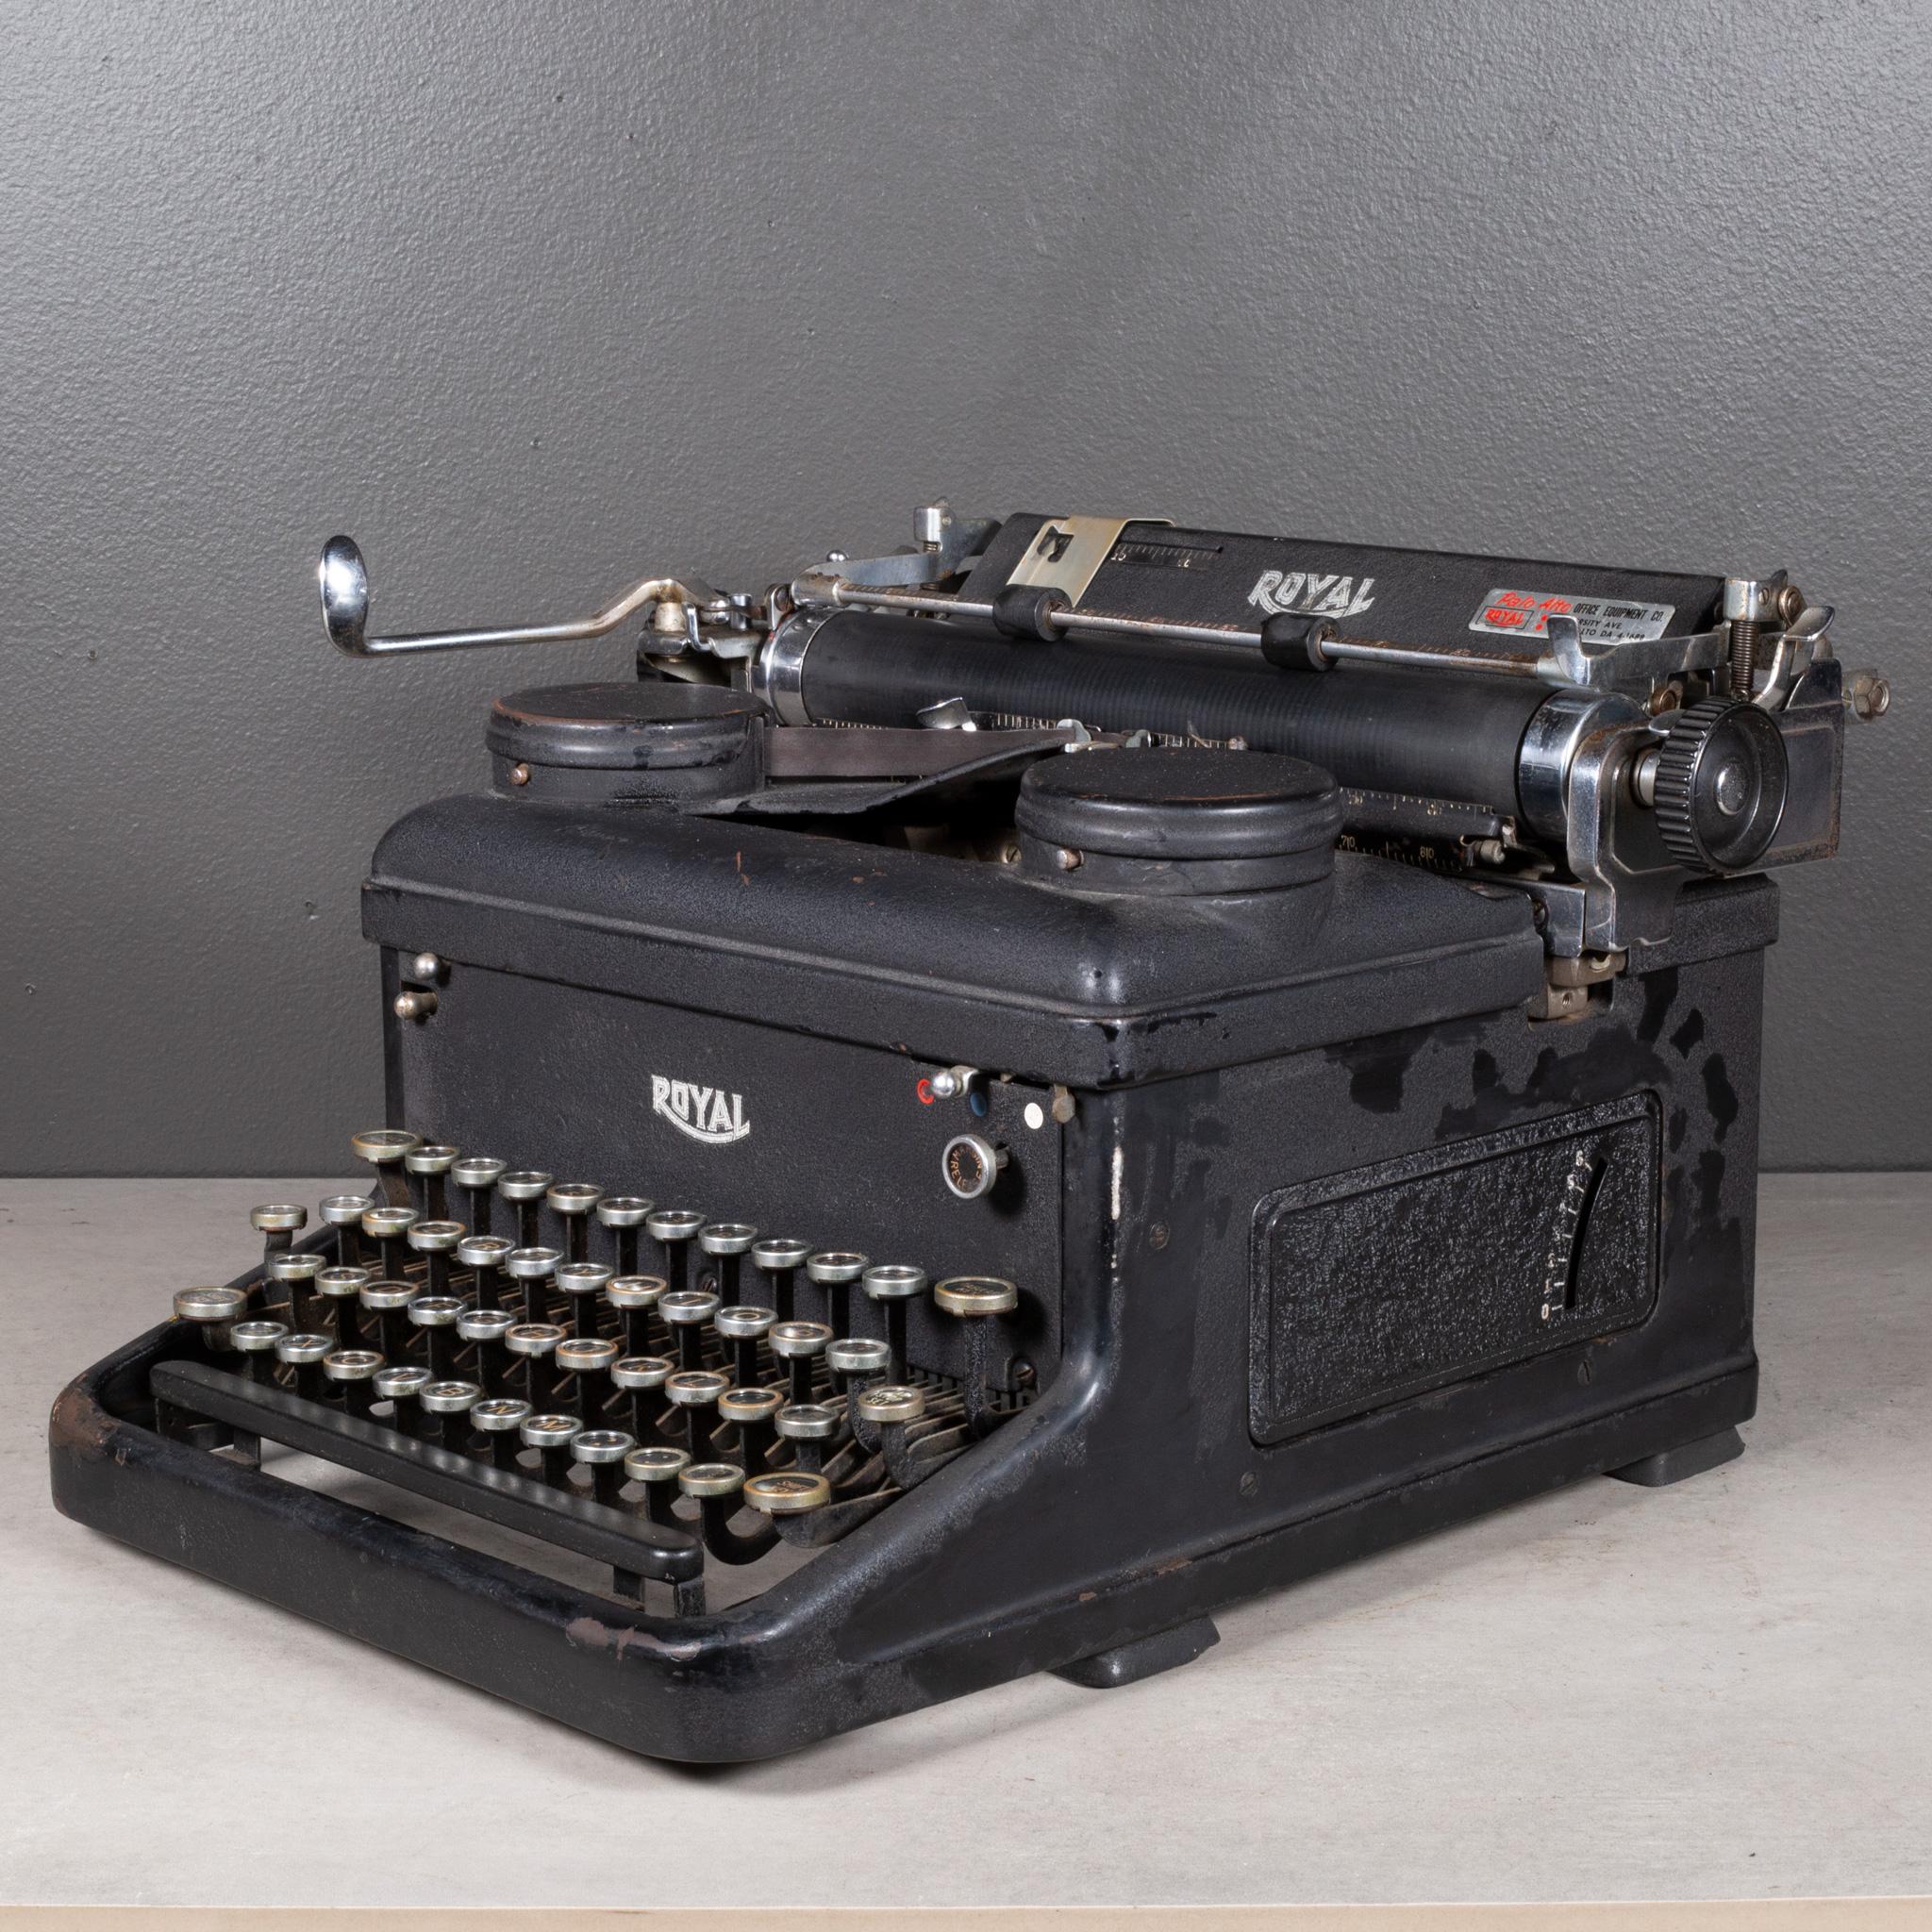 ÜBER

Eine antike Royal-Schreibmaschine mit schwarzem Crinkle-Finish. Deckel mit Möwenflügeln anheben. Die Tasten sind aus Glas mit schwarzer und goldener Schrift. Diese Schreibmaschine tippt flüssig, der Wagen und die Leertaste funktionieren gut